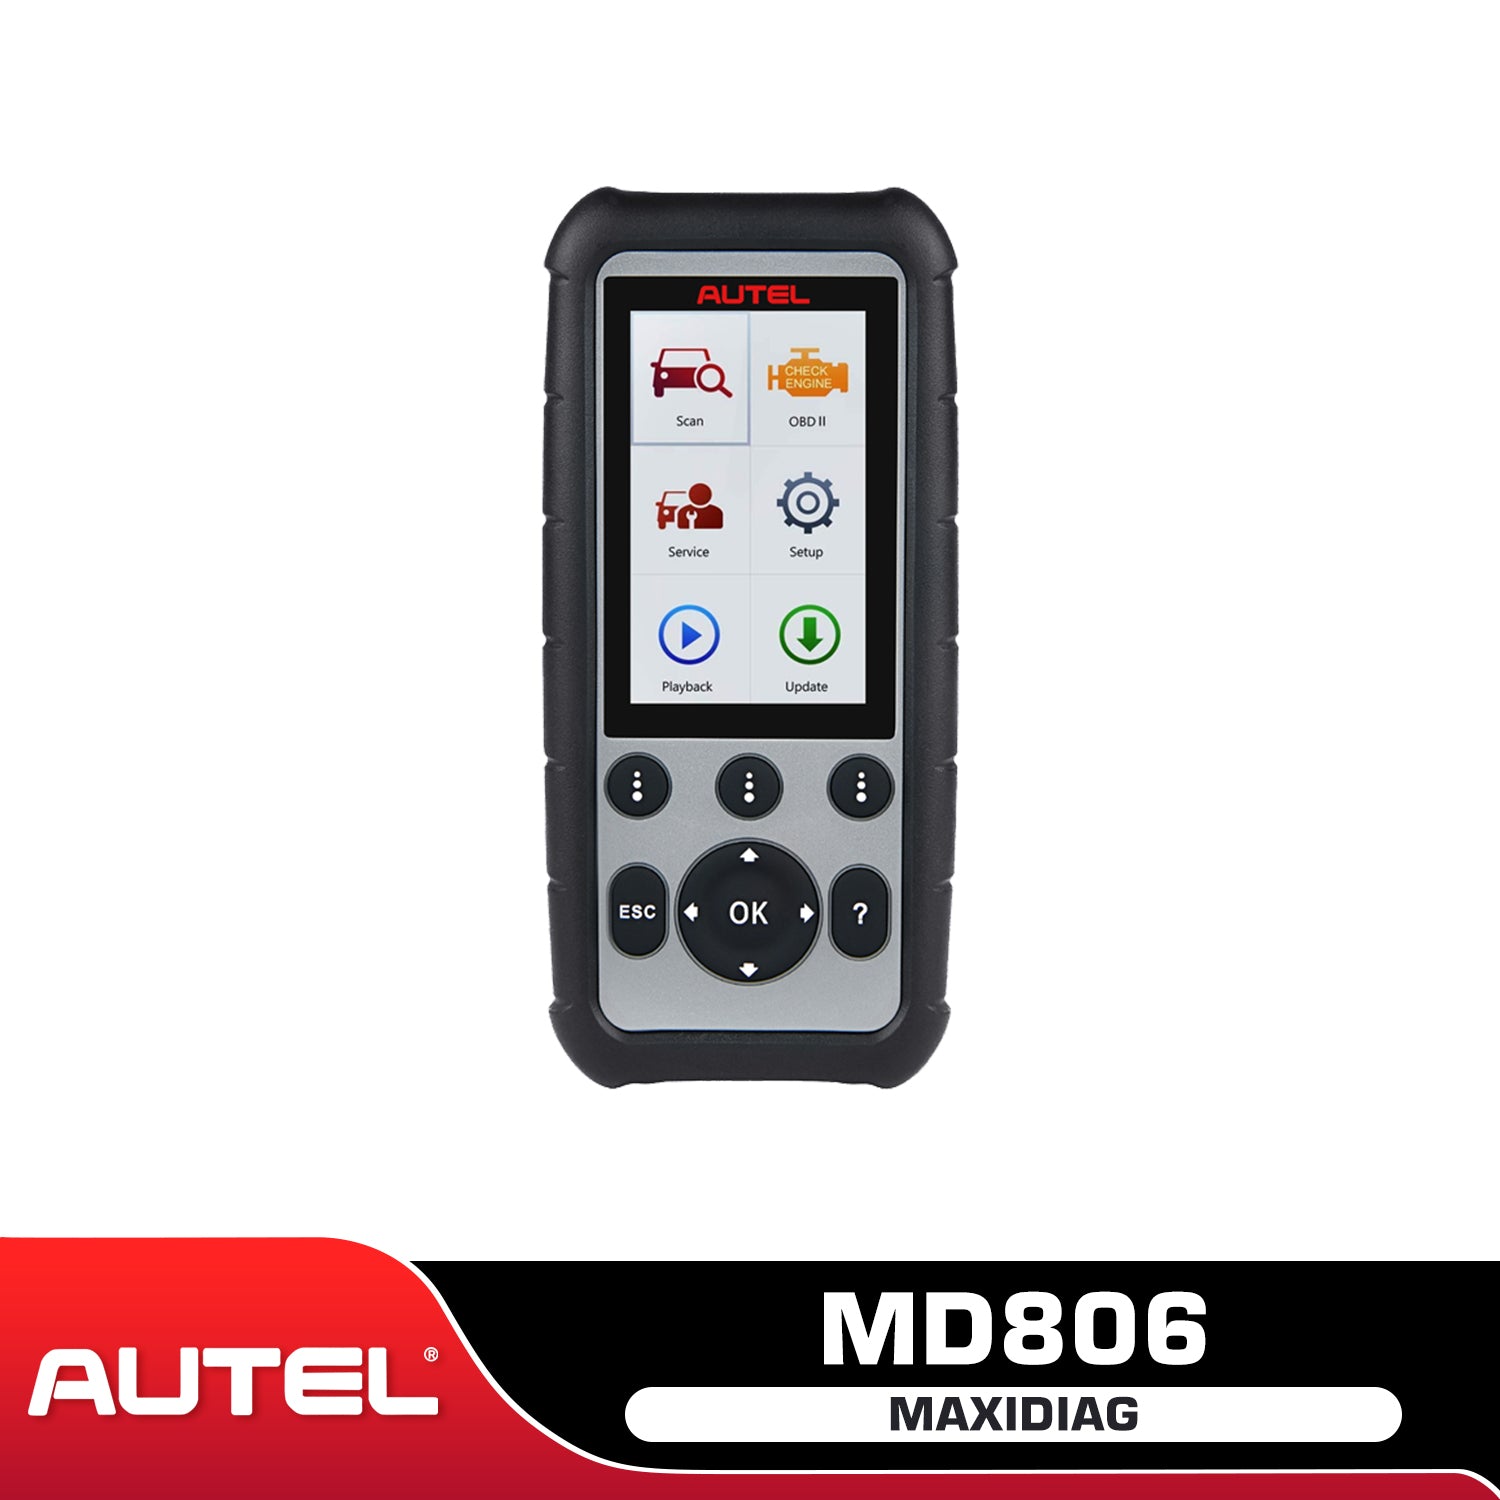 Autel MaxiCOM MK808BT Pro OBD2 Diagnostic Scan Tool - 2024 Version –  DiagMart